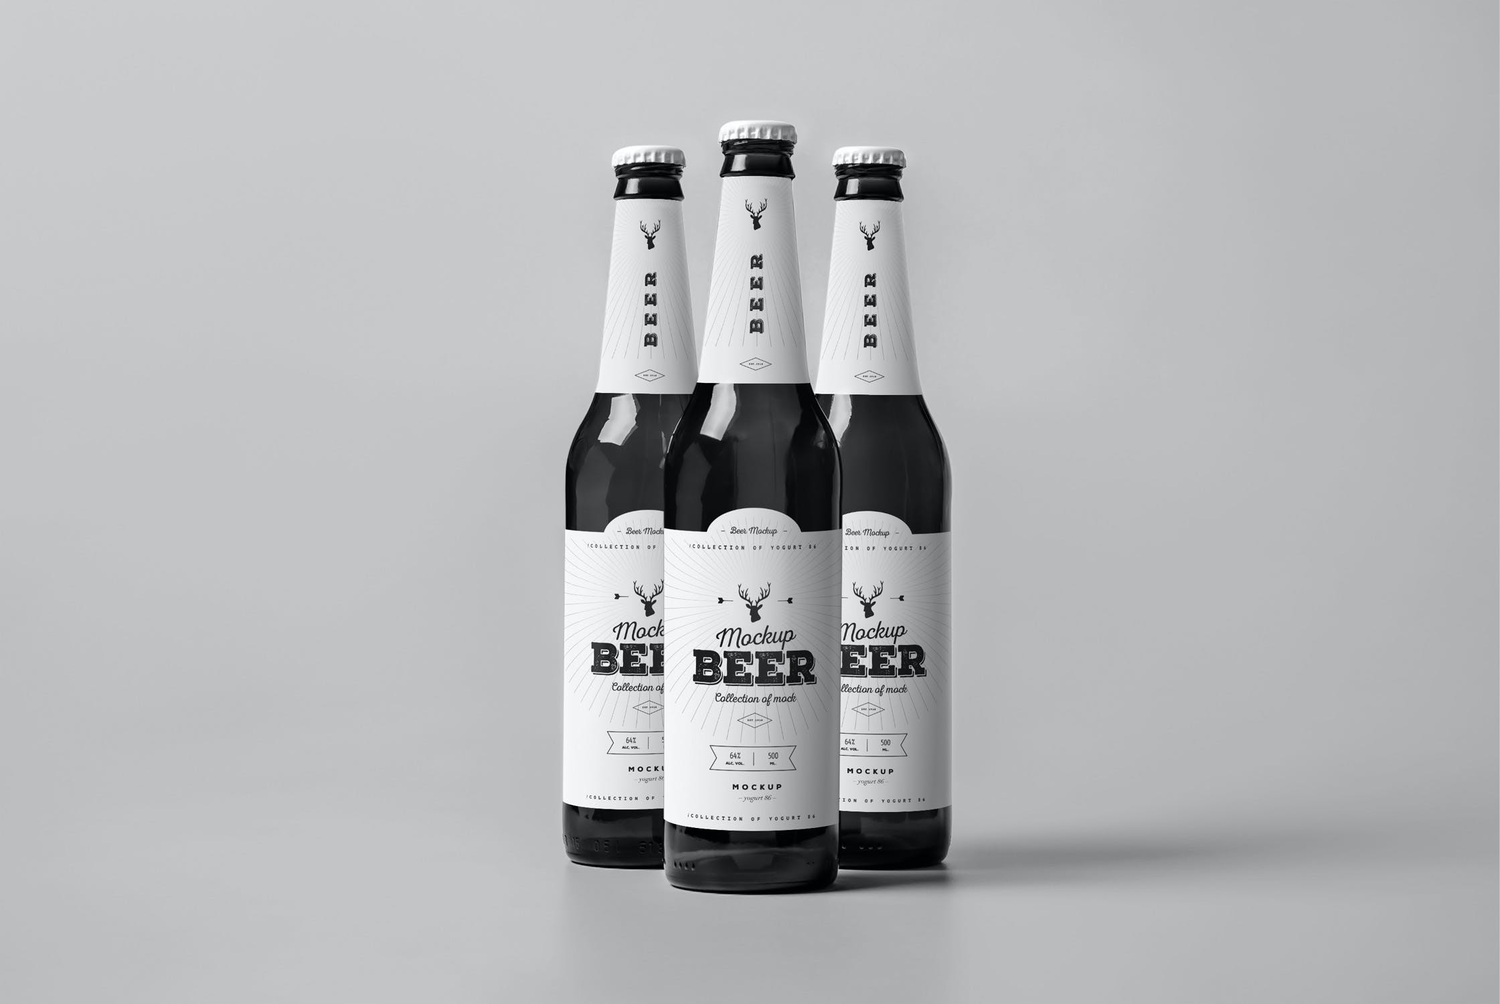 4759 啤酒瓶酒标产品包装设计样机素材组合多角度展示ps空白贴图模板 Beer Mock-up@GOOODME.COM